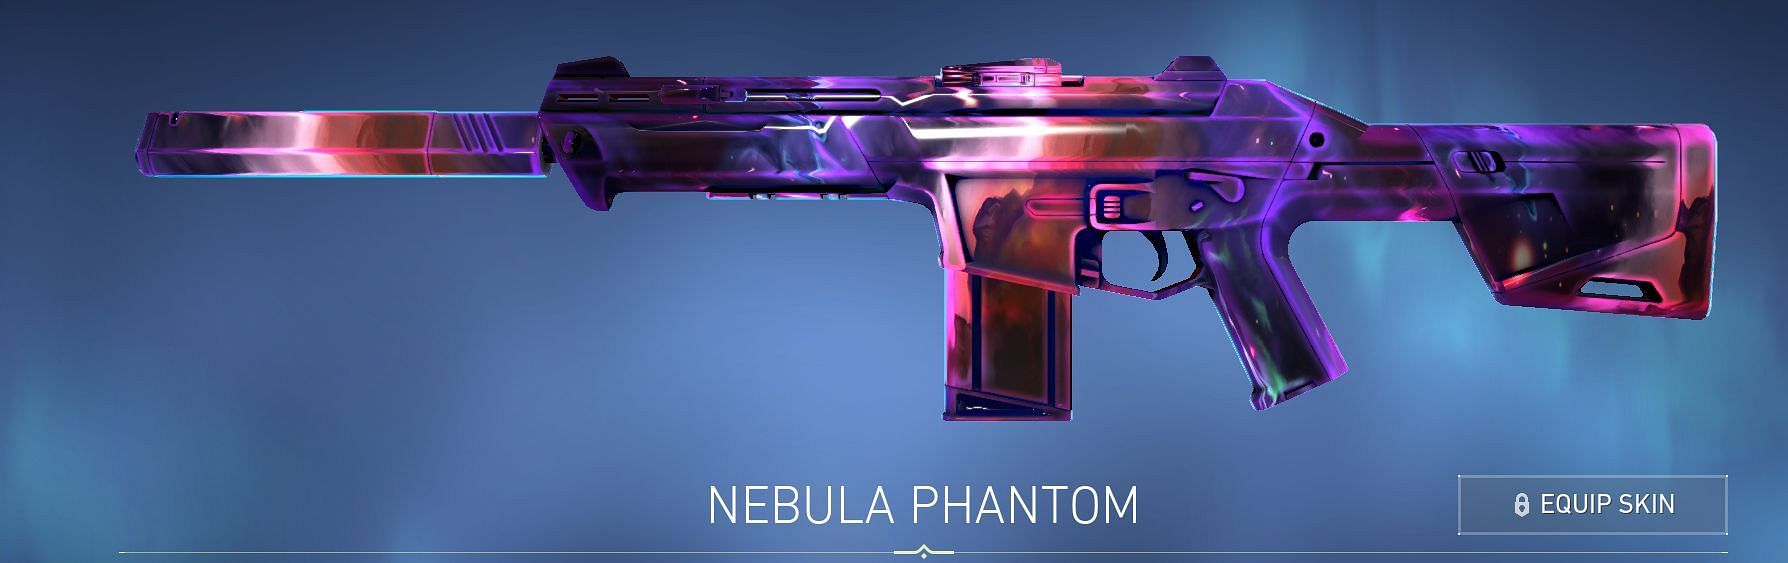 Nebula Phantom (Image via Riot Games)